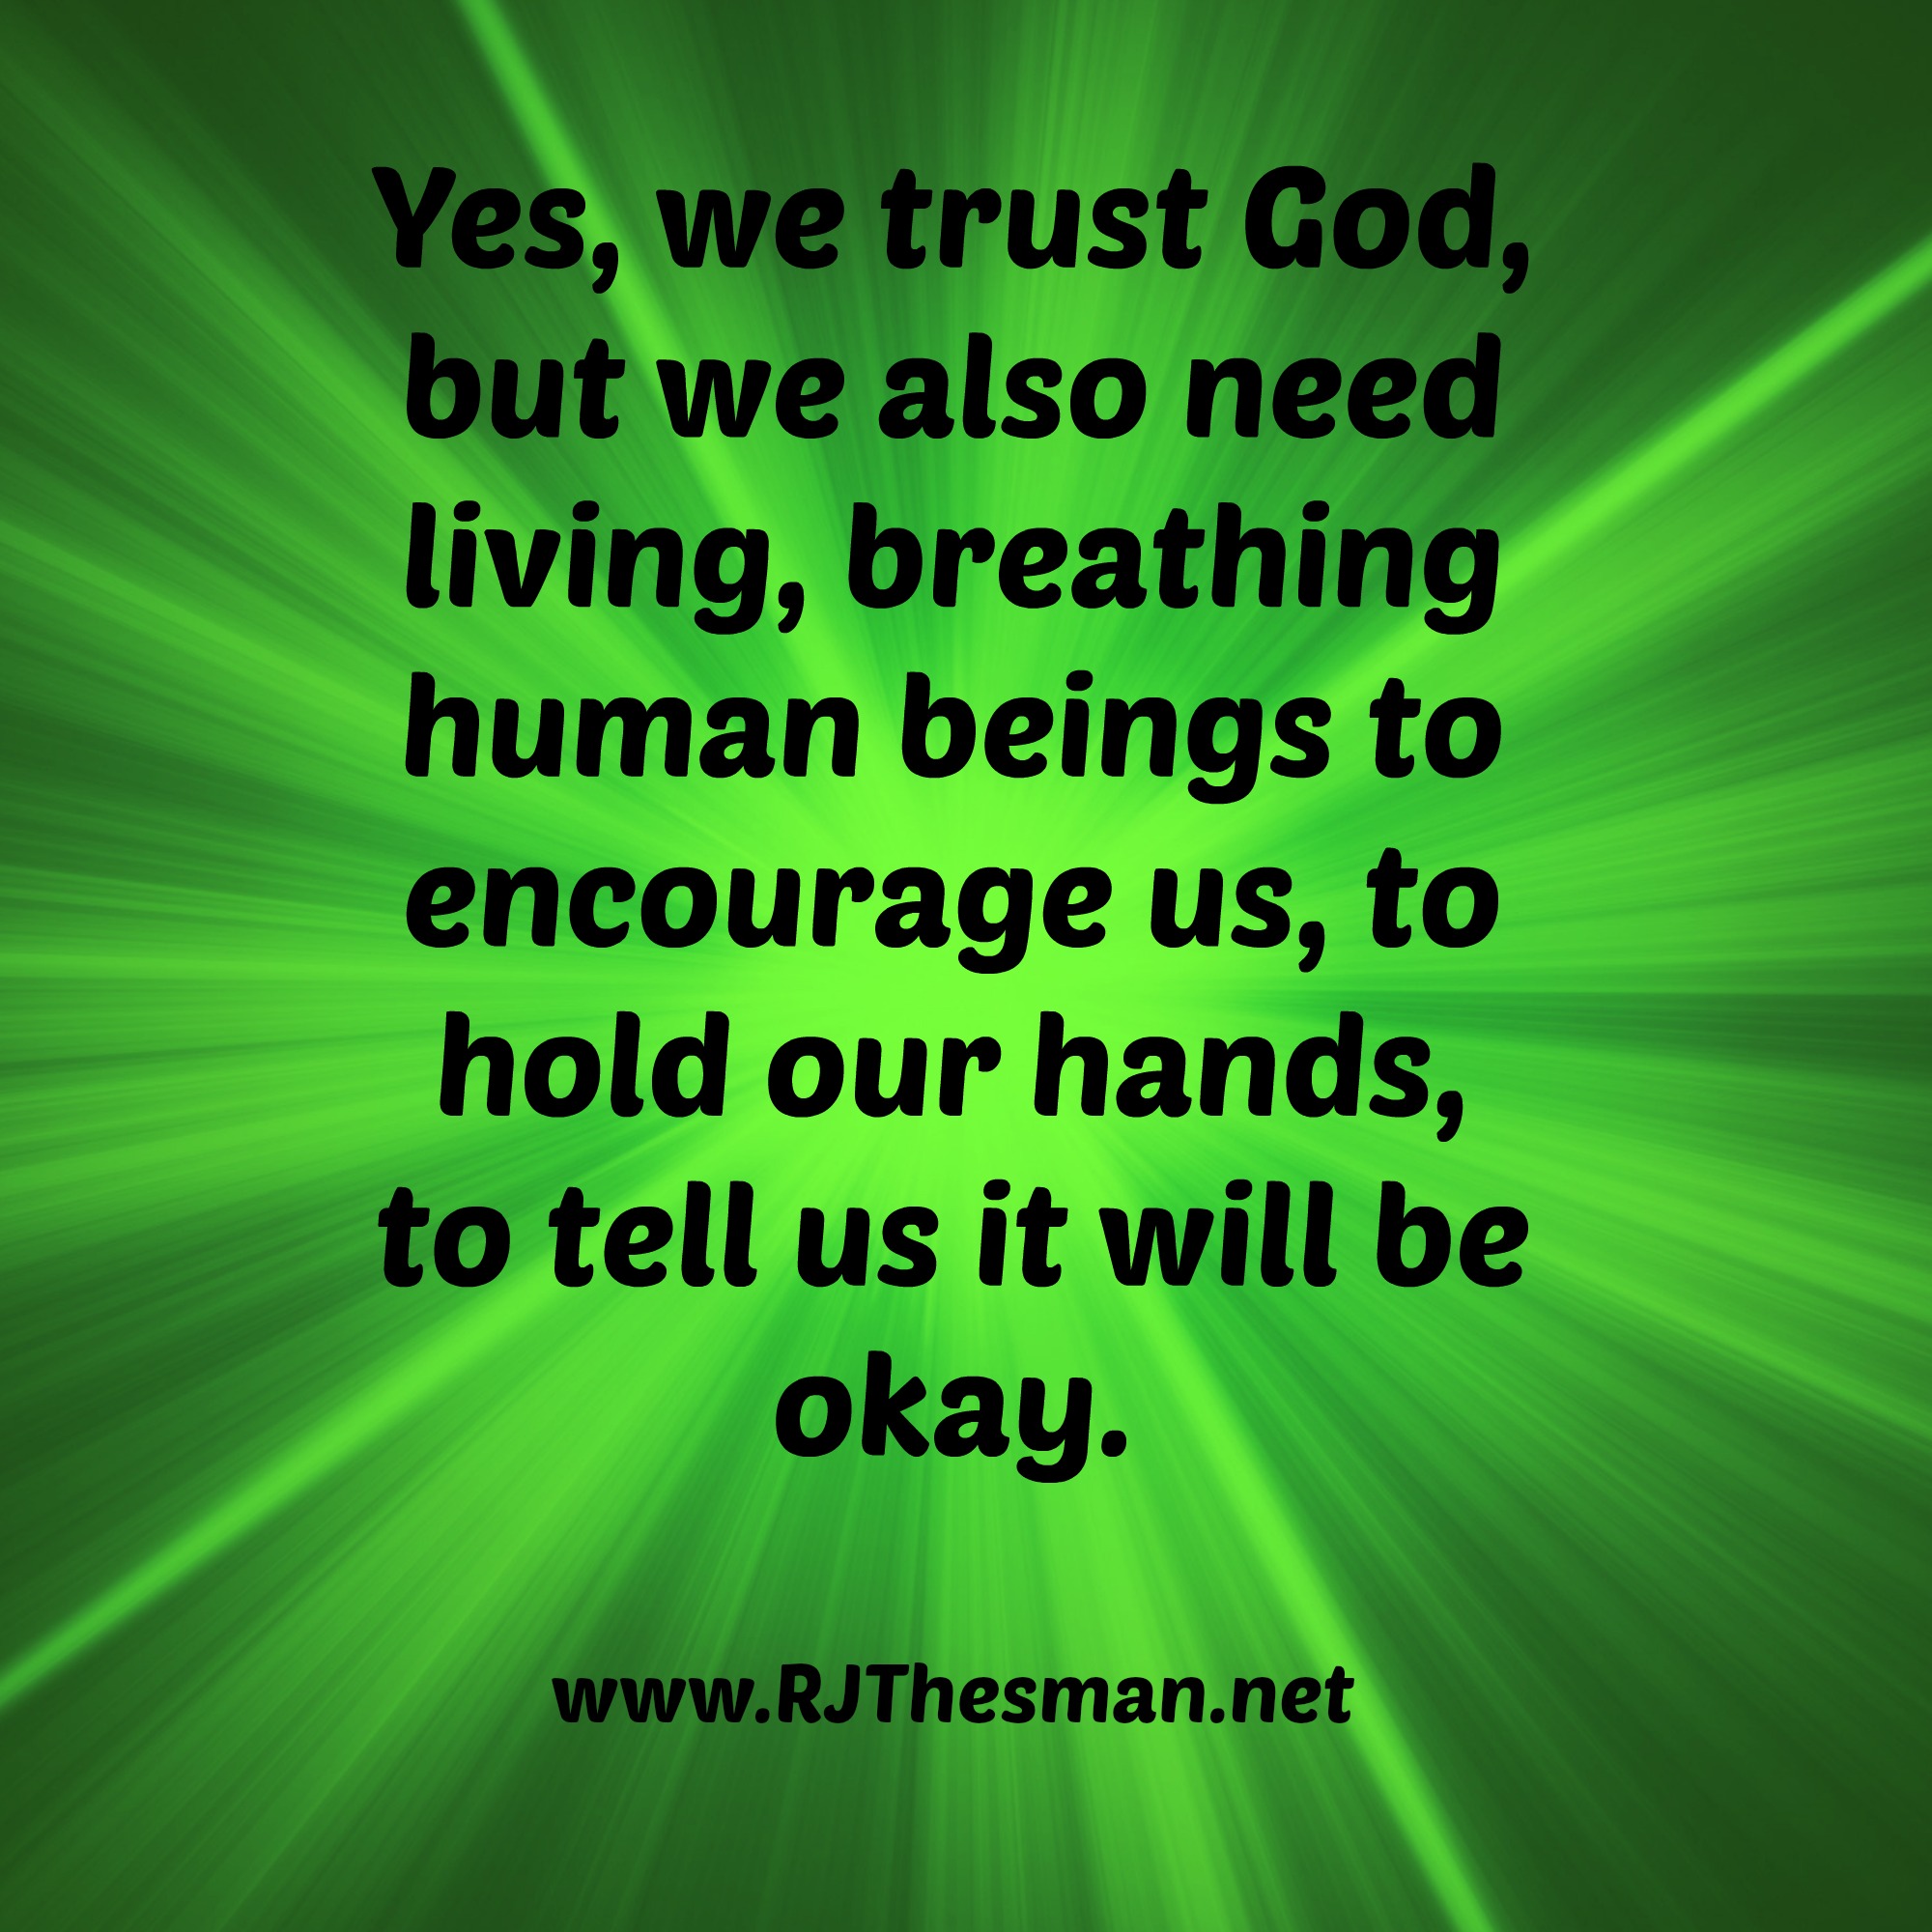 Yes - we trust God